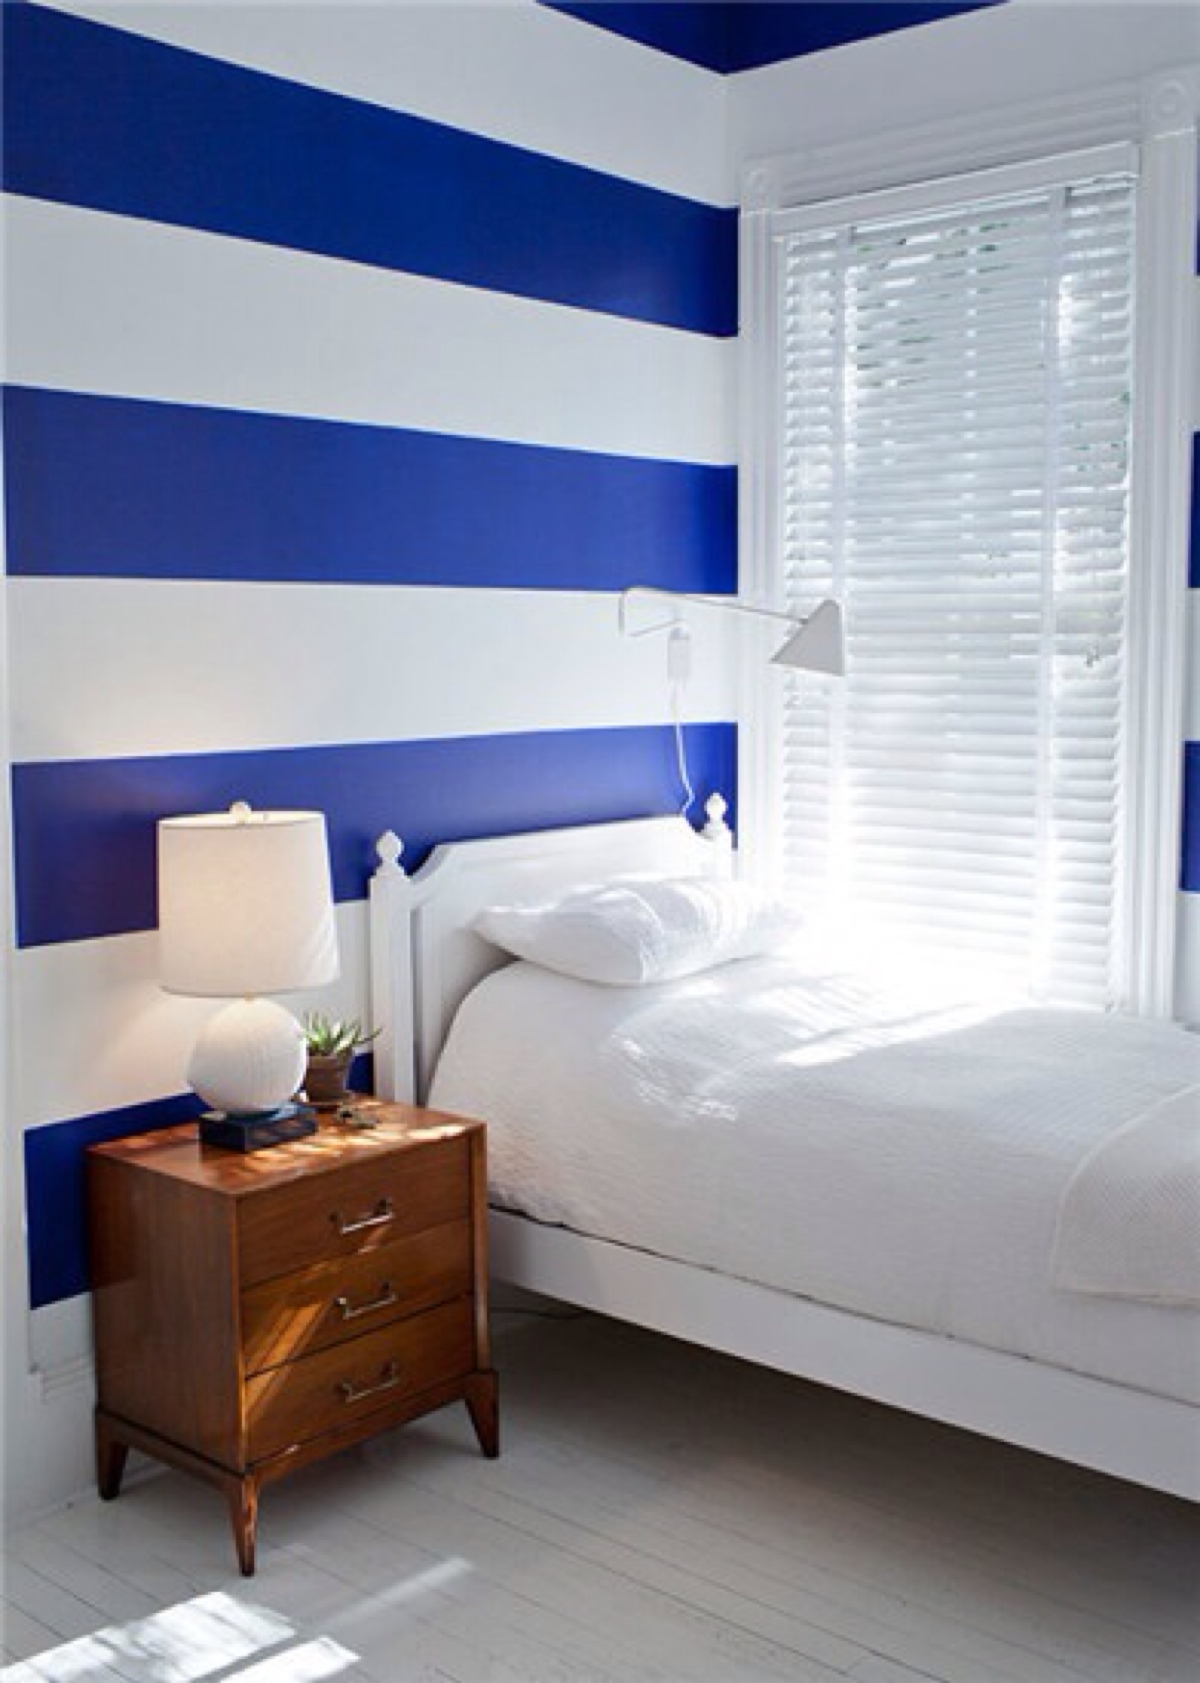 这里的墙面是贴上蓝白相间的壁纸,适合装修小男生的房间,与上一间房间